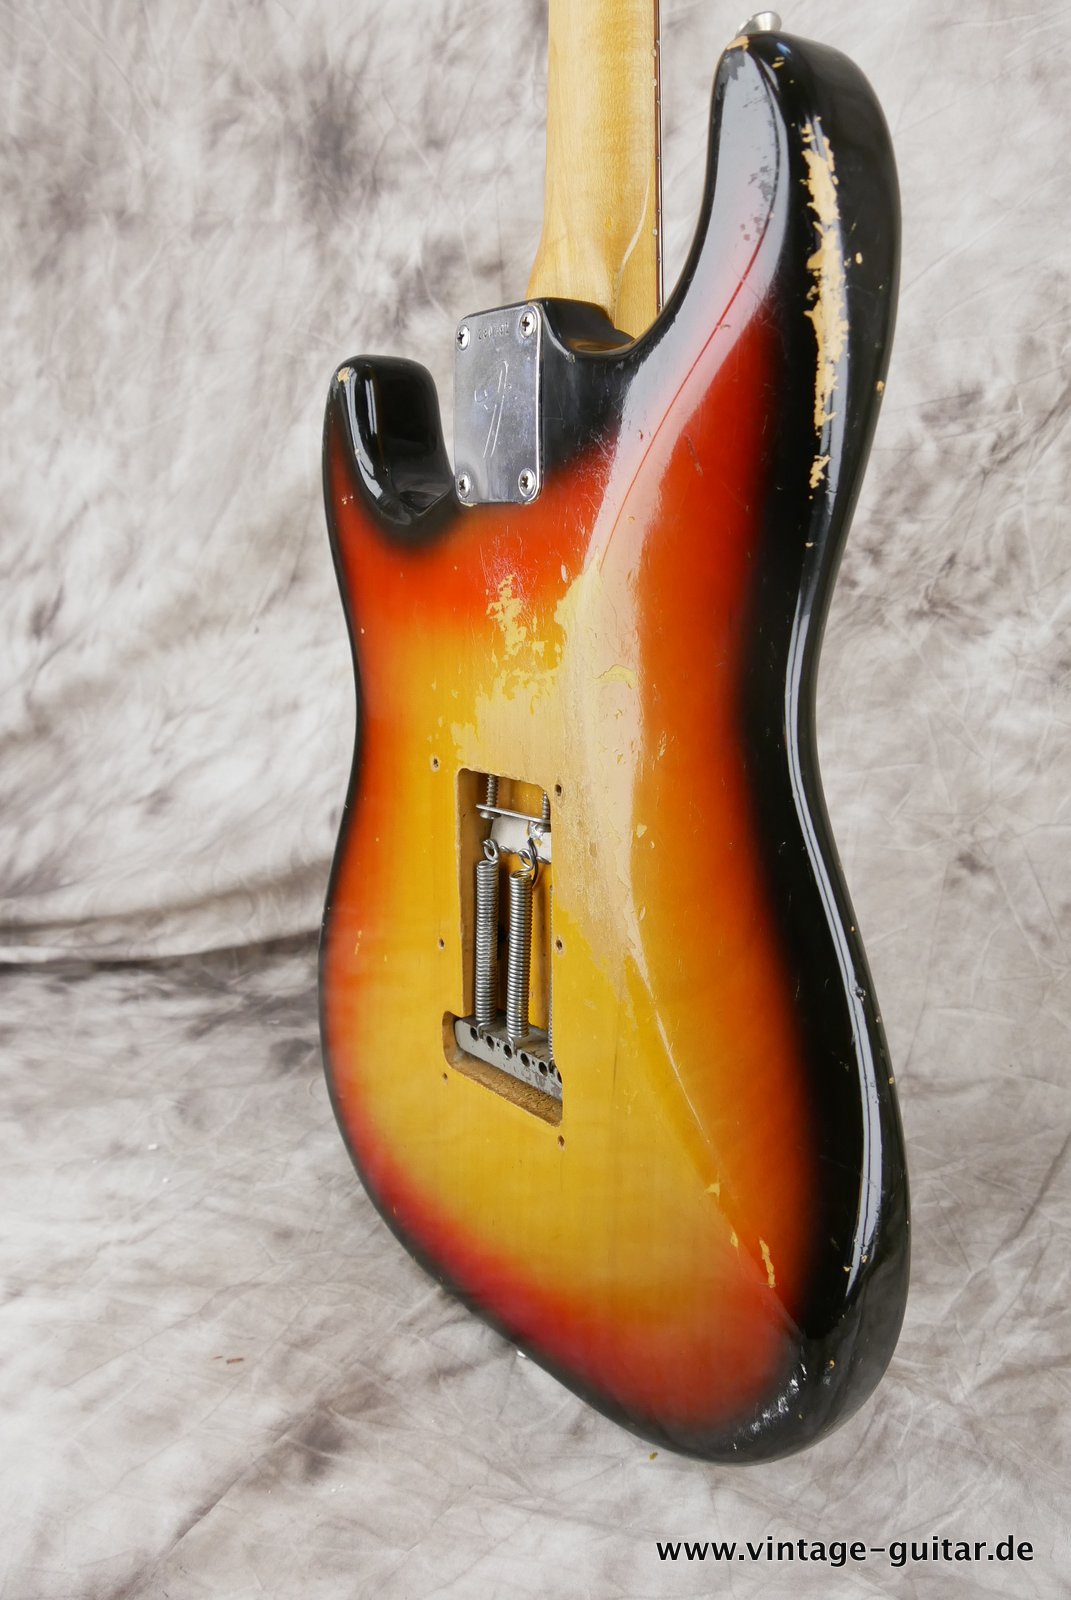 Fender-Stratocaster-1972-sunburst-4-hole-008.JPG